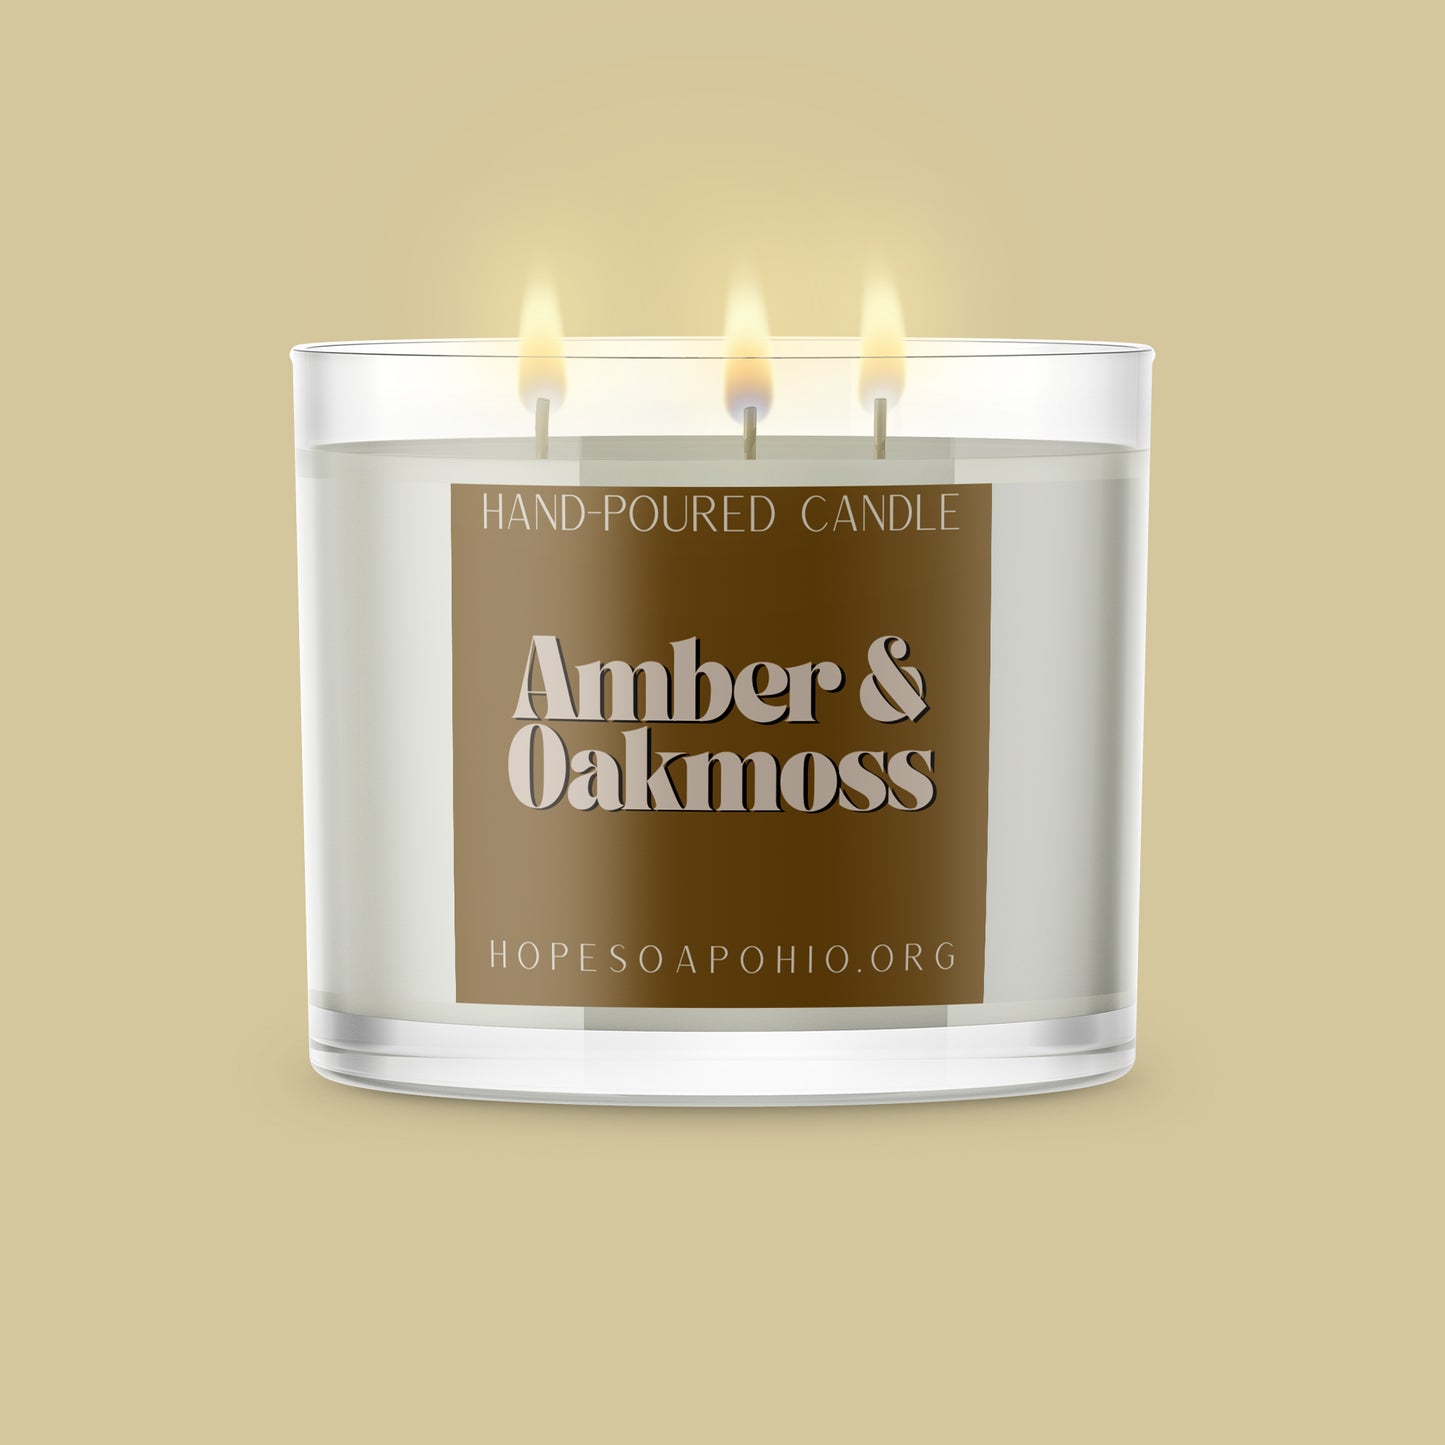 Amber & Oakmoss 3-Wick Candle - HOPESOAPOHIO